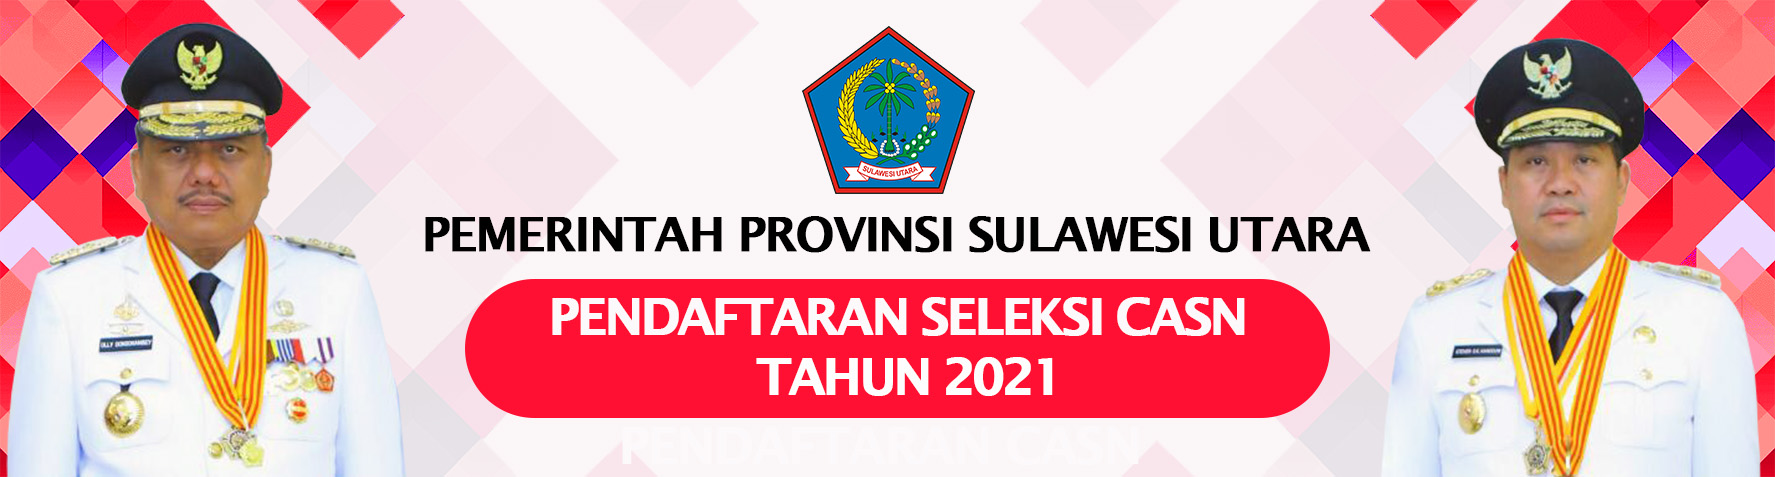 Pengumuman Rekrutmen Calon ASN Di Lingkungan Pemerintah Provinsi Sulawesi Utara Tahun 2021